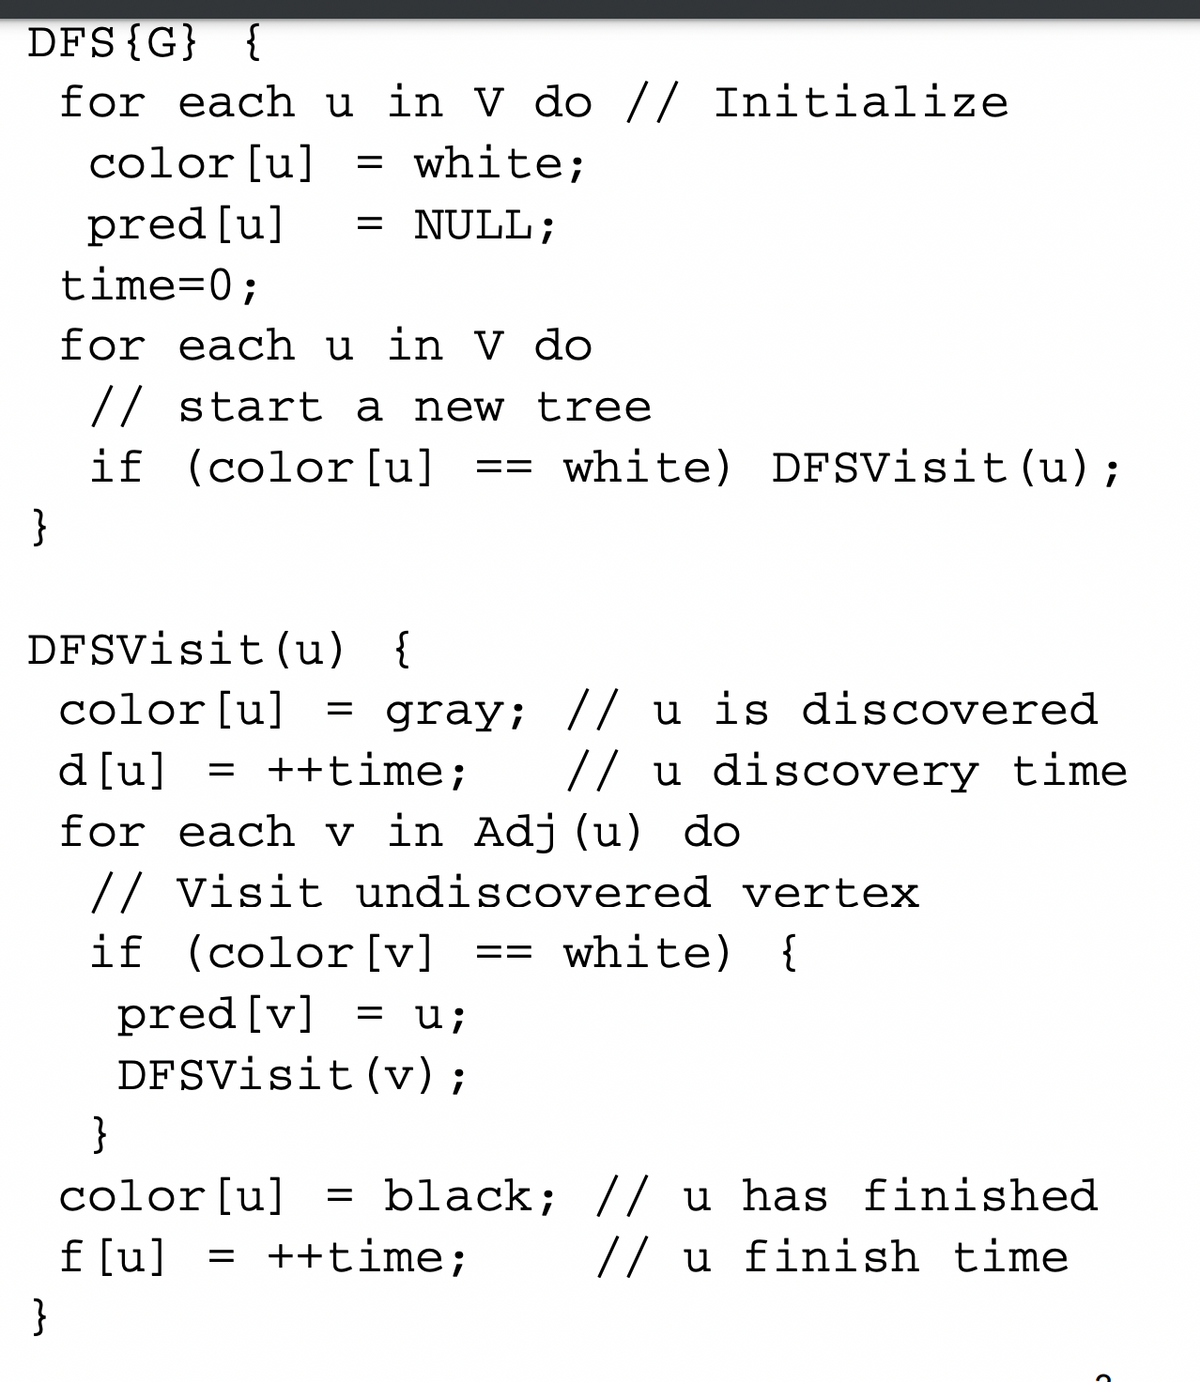 DFS{G} {
for each u in V do // Initialize
= white;
color [u]
pred[u]
time=0;
= NULL;
||
for each u in V do
// start a new tree
if (color[u]
white) DFsVisit (u);
==
}
DFSVisit (u) {
color[u] = gray; // u is discovered
// u discovery time
d [u] = ++time;
for each v in Adj (u) do
// Visit undiscovered vertex
if (color [v] ==
white) {
pred [v]
DFSVisit(v);
u;
}
color[u]
= black; // u has finished
f [u] = ++time;
// u finish time
}
